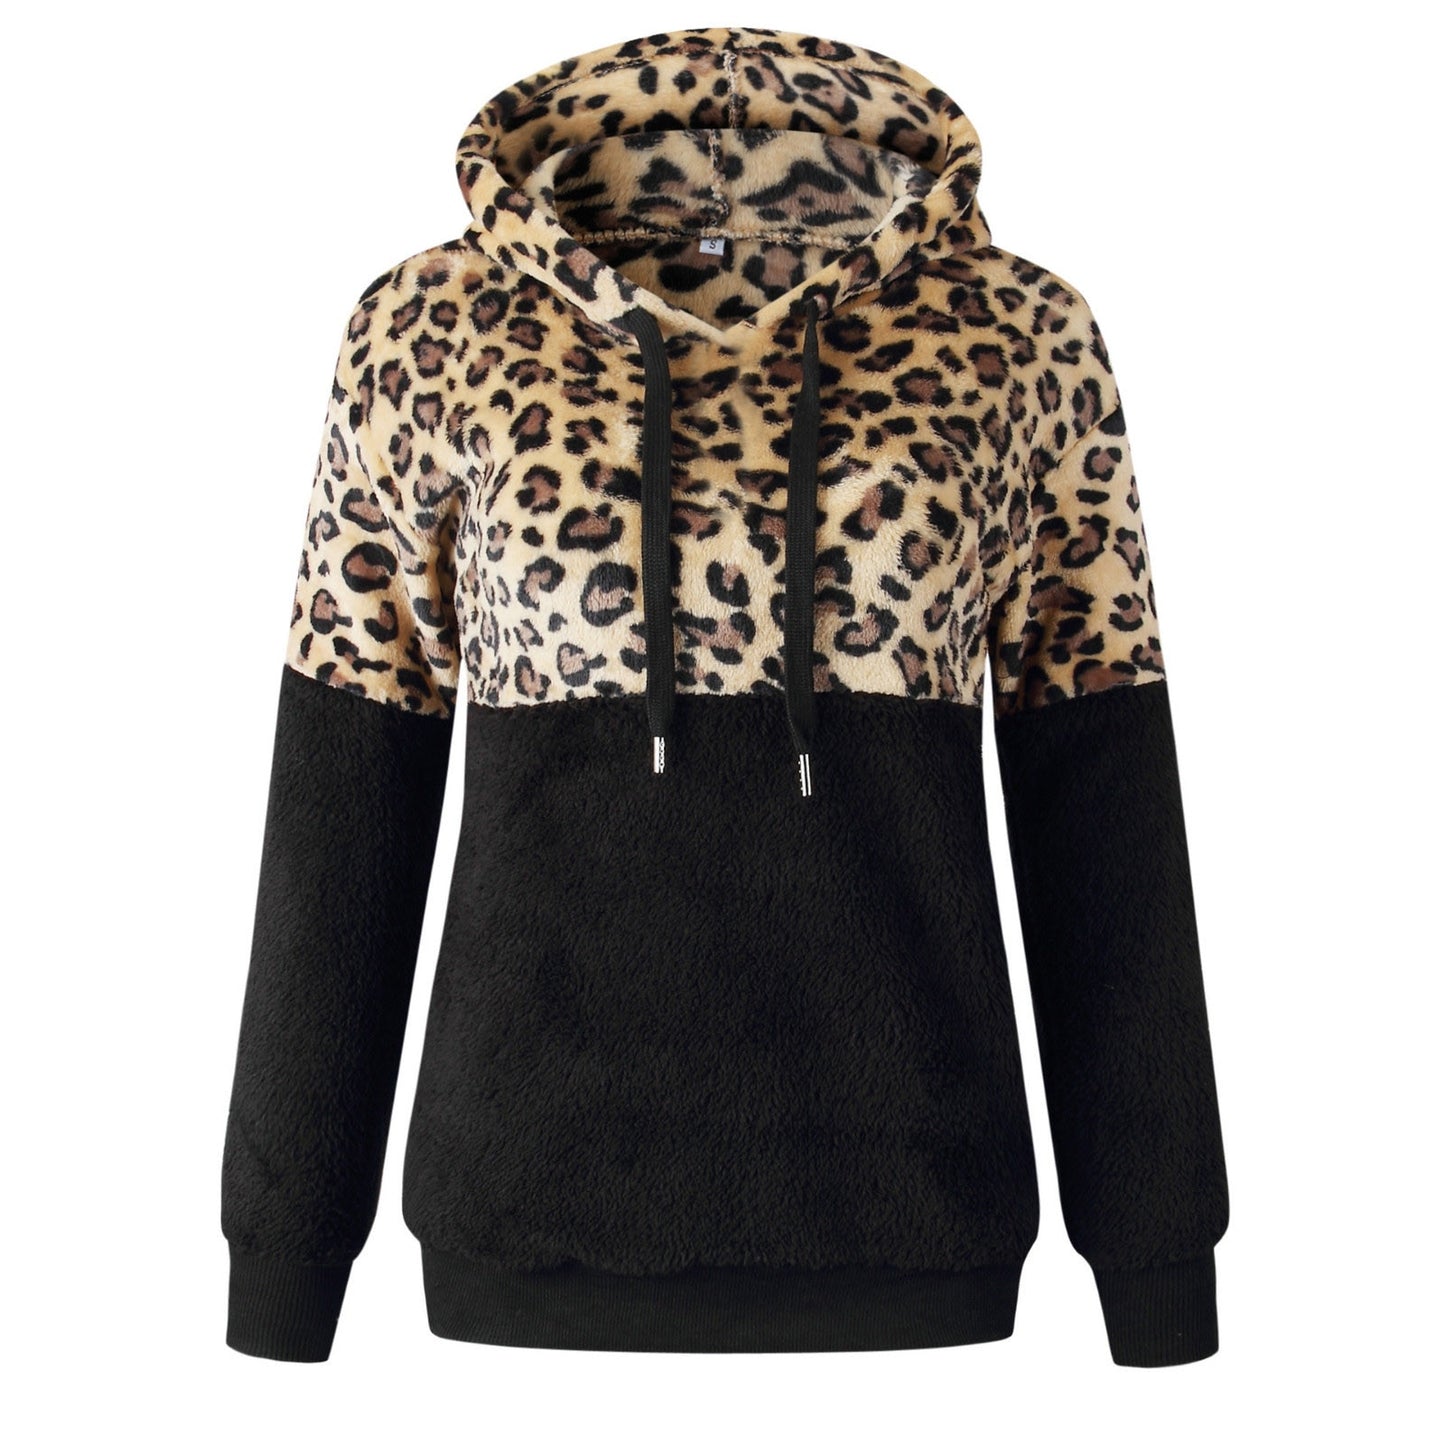 S,M,L,XL,2XL,3XL,4XL Sweatshirt Leopard Print Winter Hoodie - Fashion Damsel